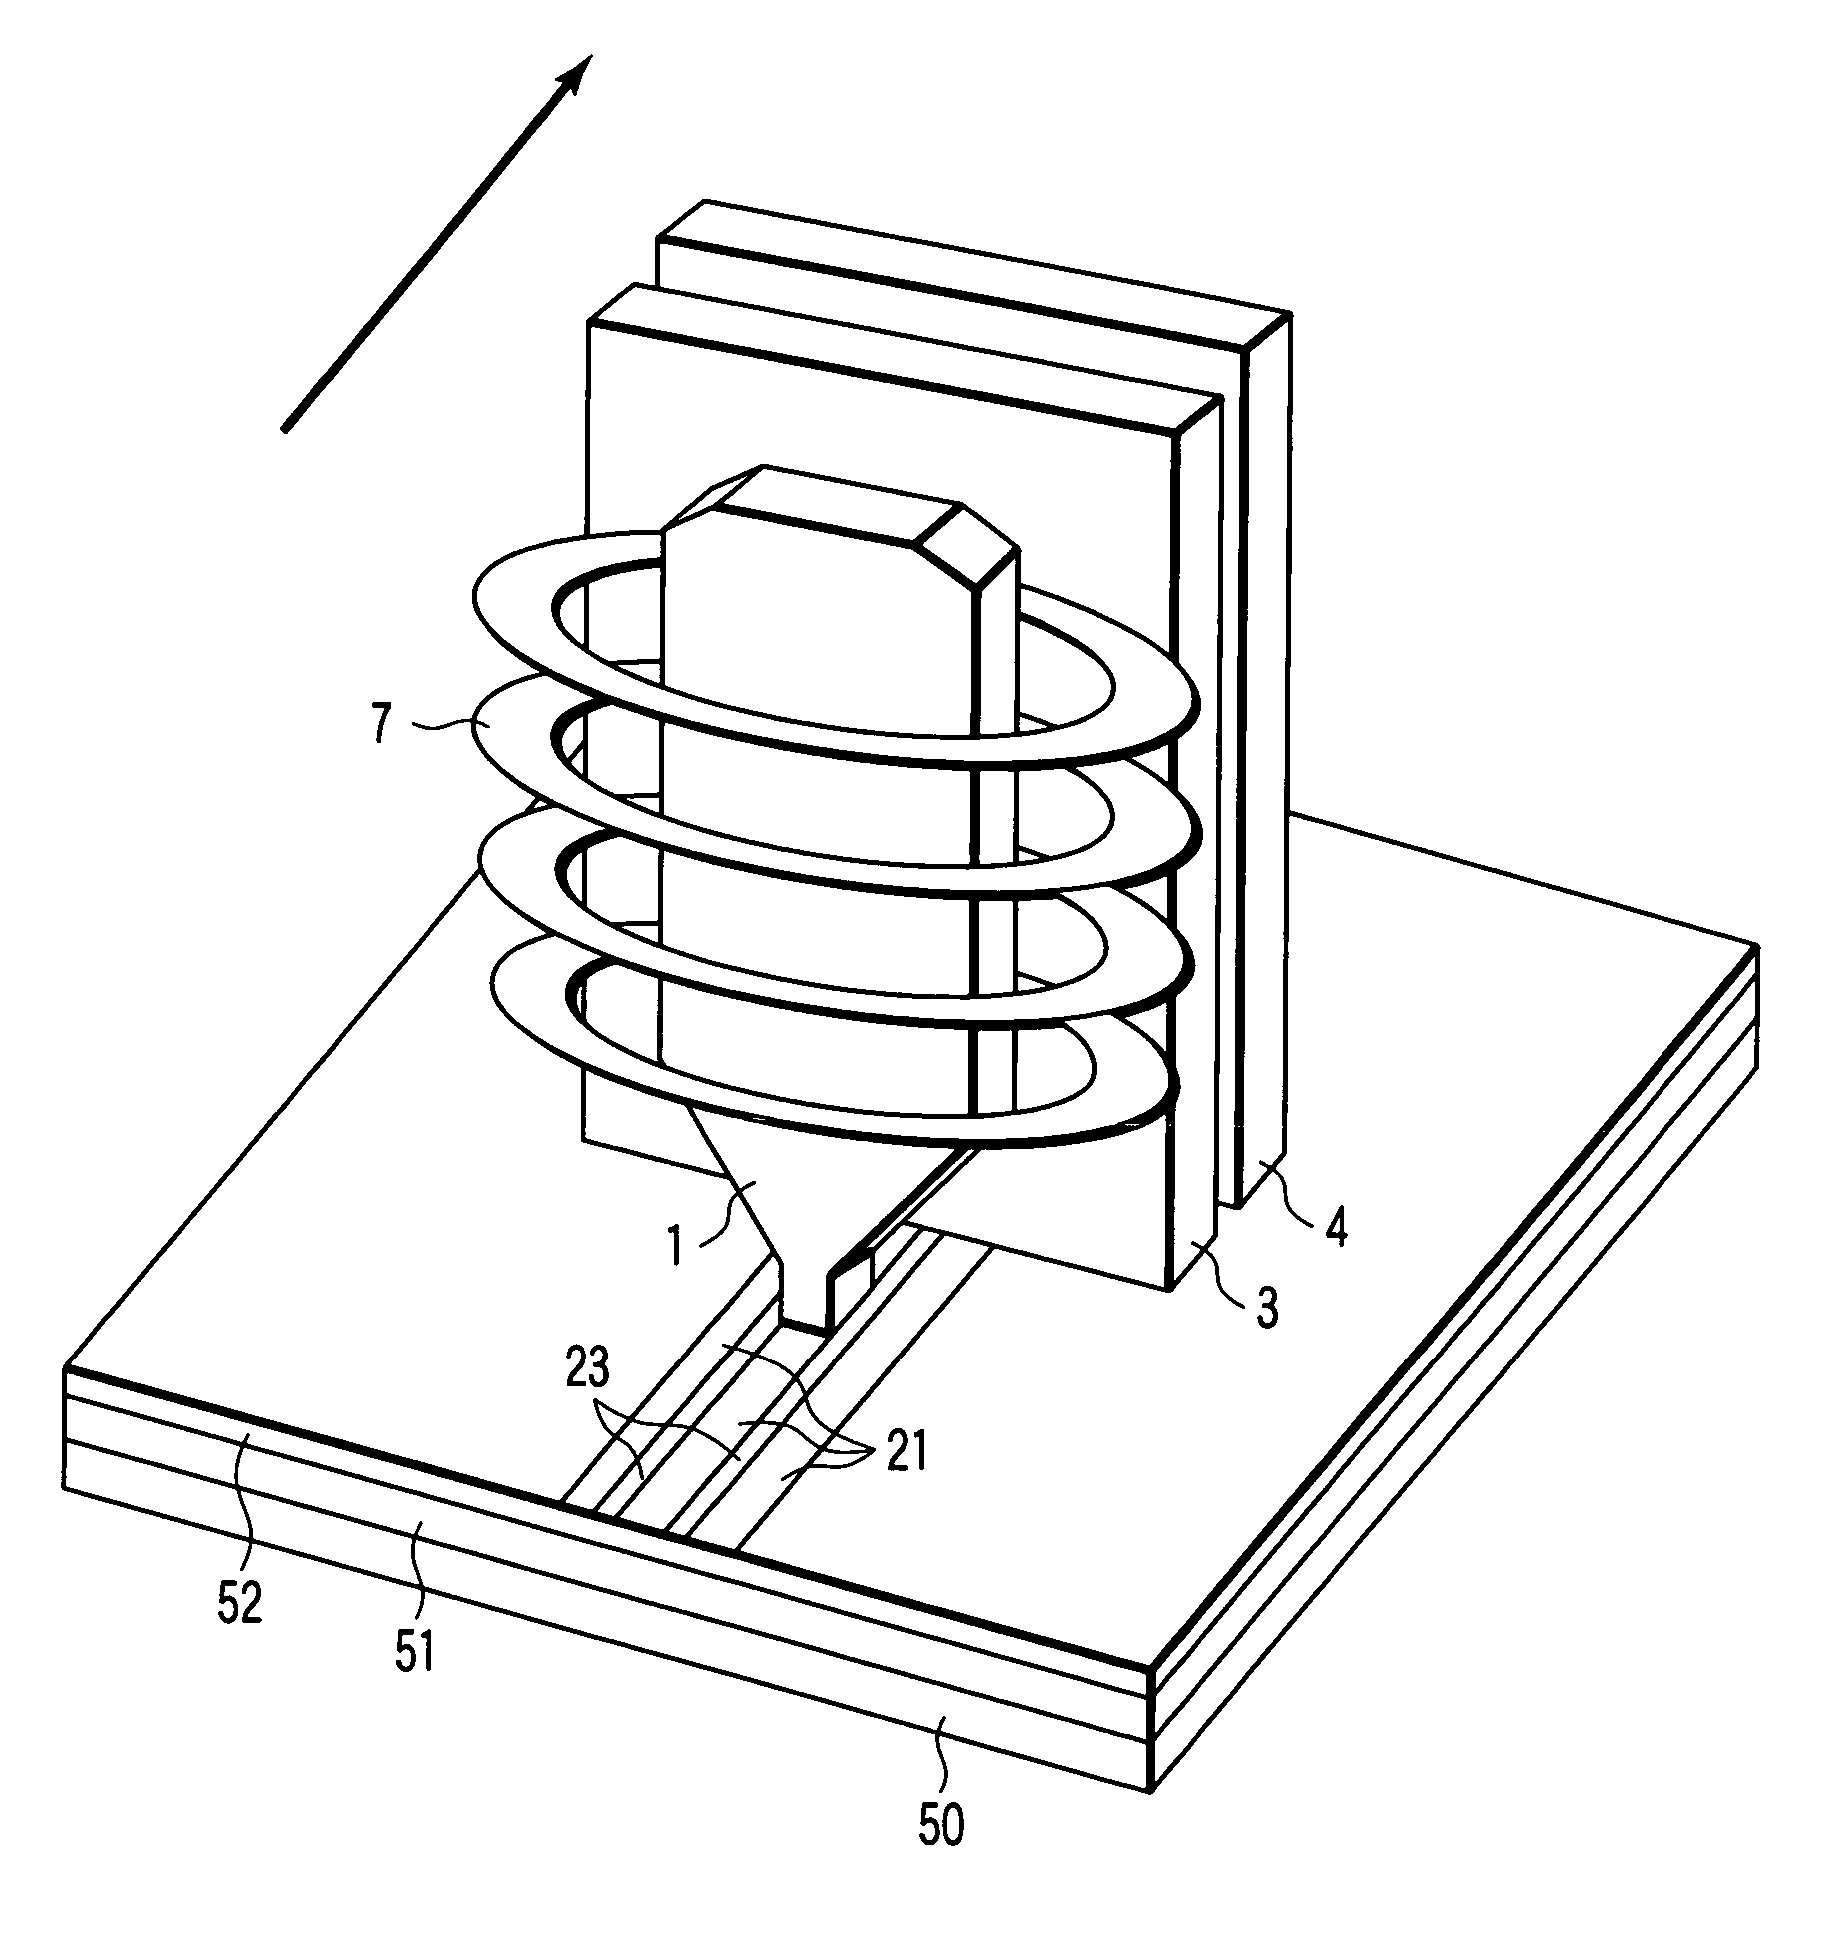 Perpendicular magnetic recording apparatus having discrete track media